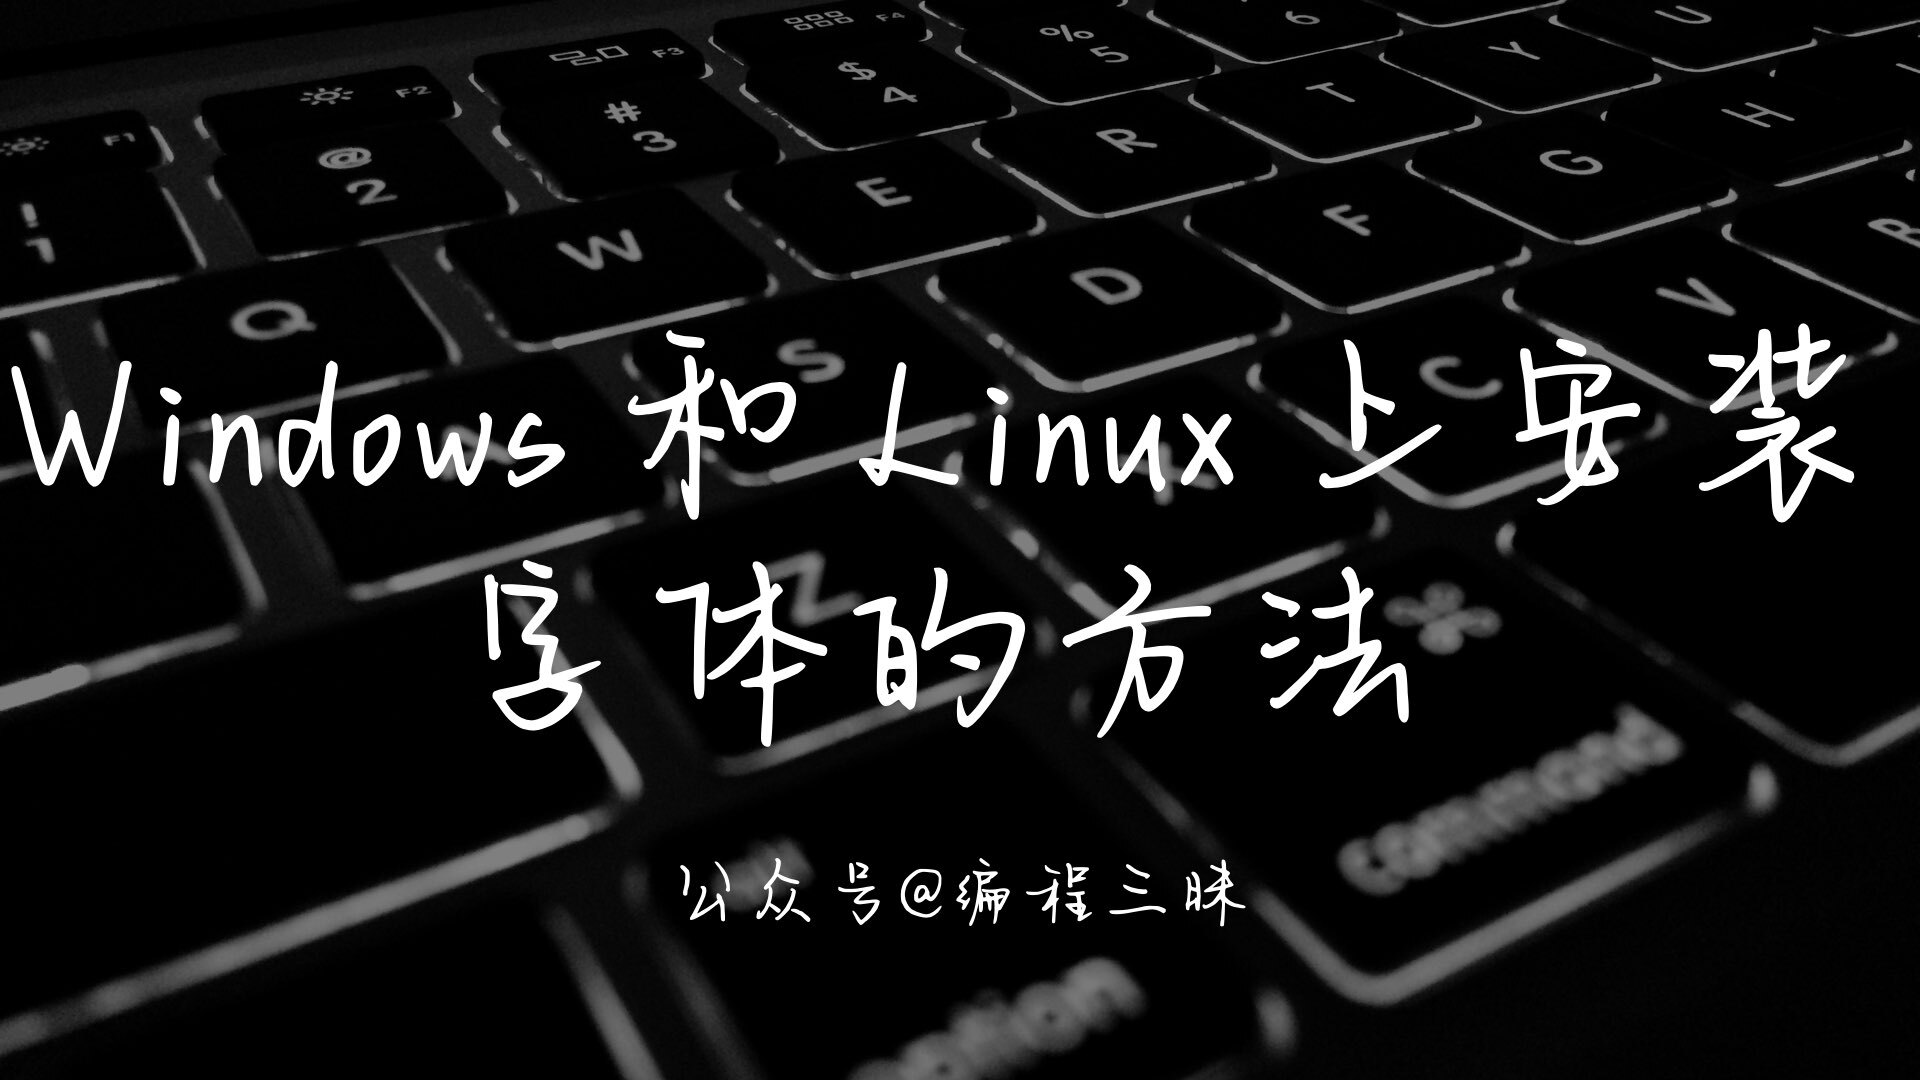 Windows 和 Linux 上安装 TTF 字体的方法